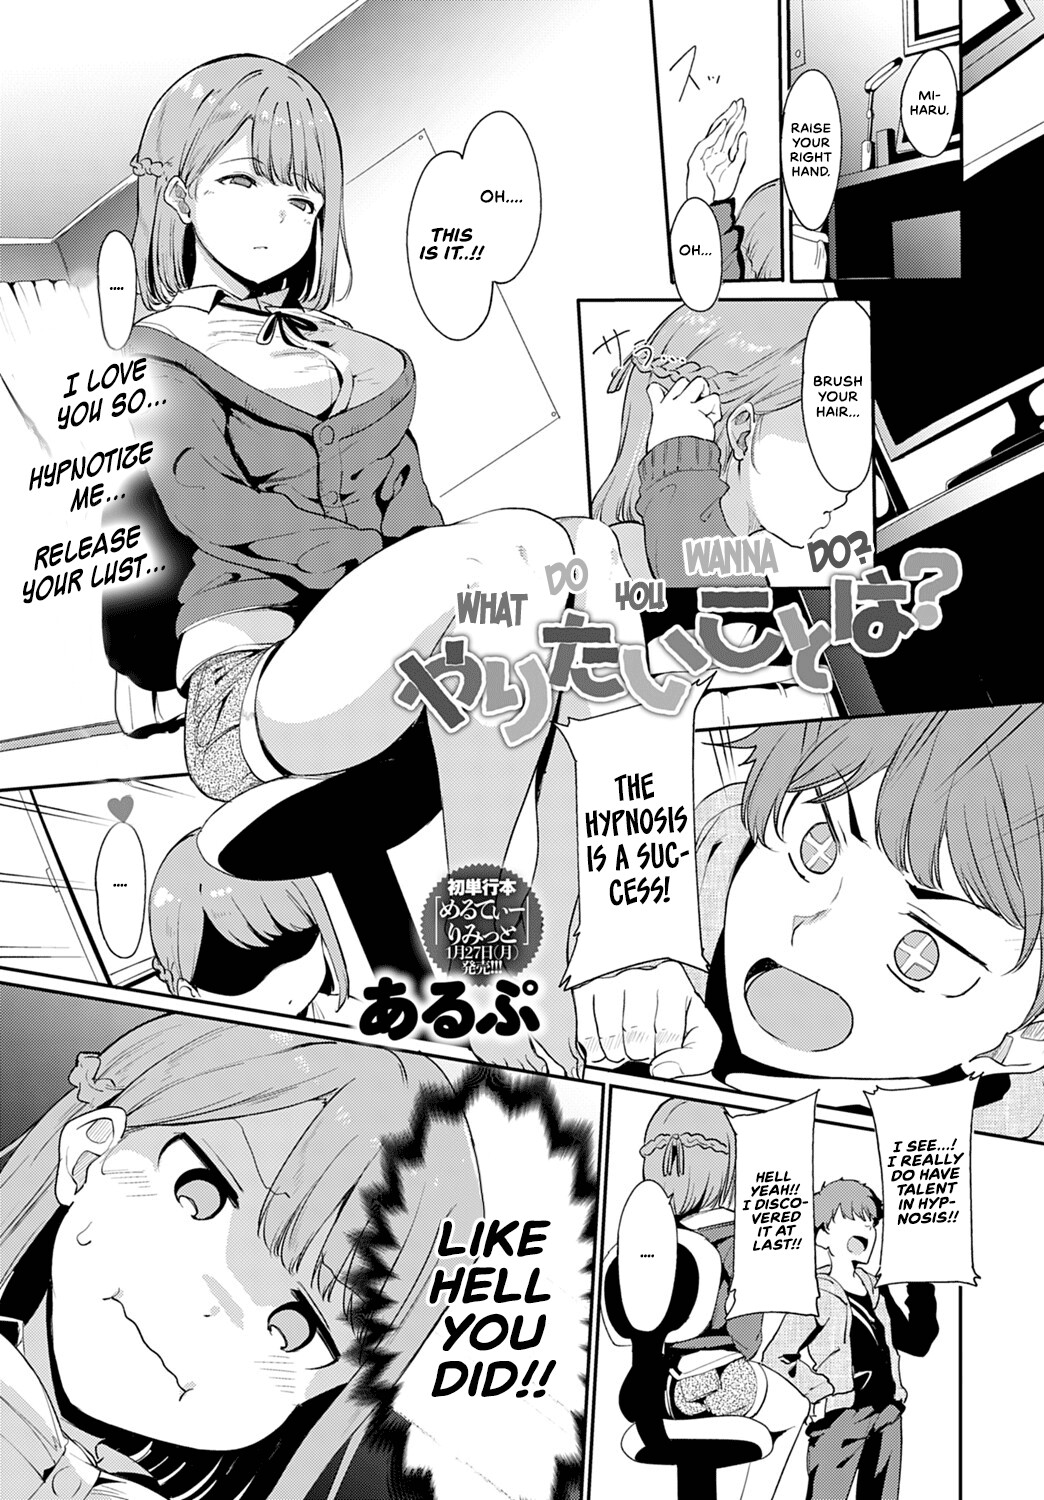 Hentai Manga Comic-What Do You Wanna Do?-Read-1